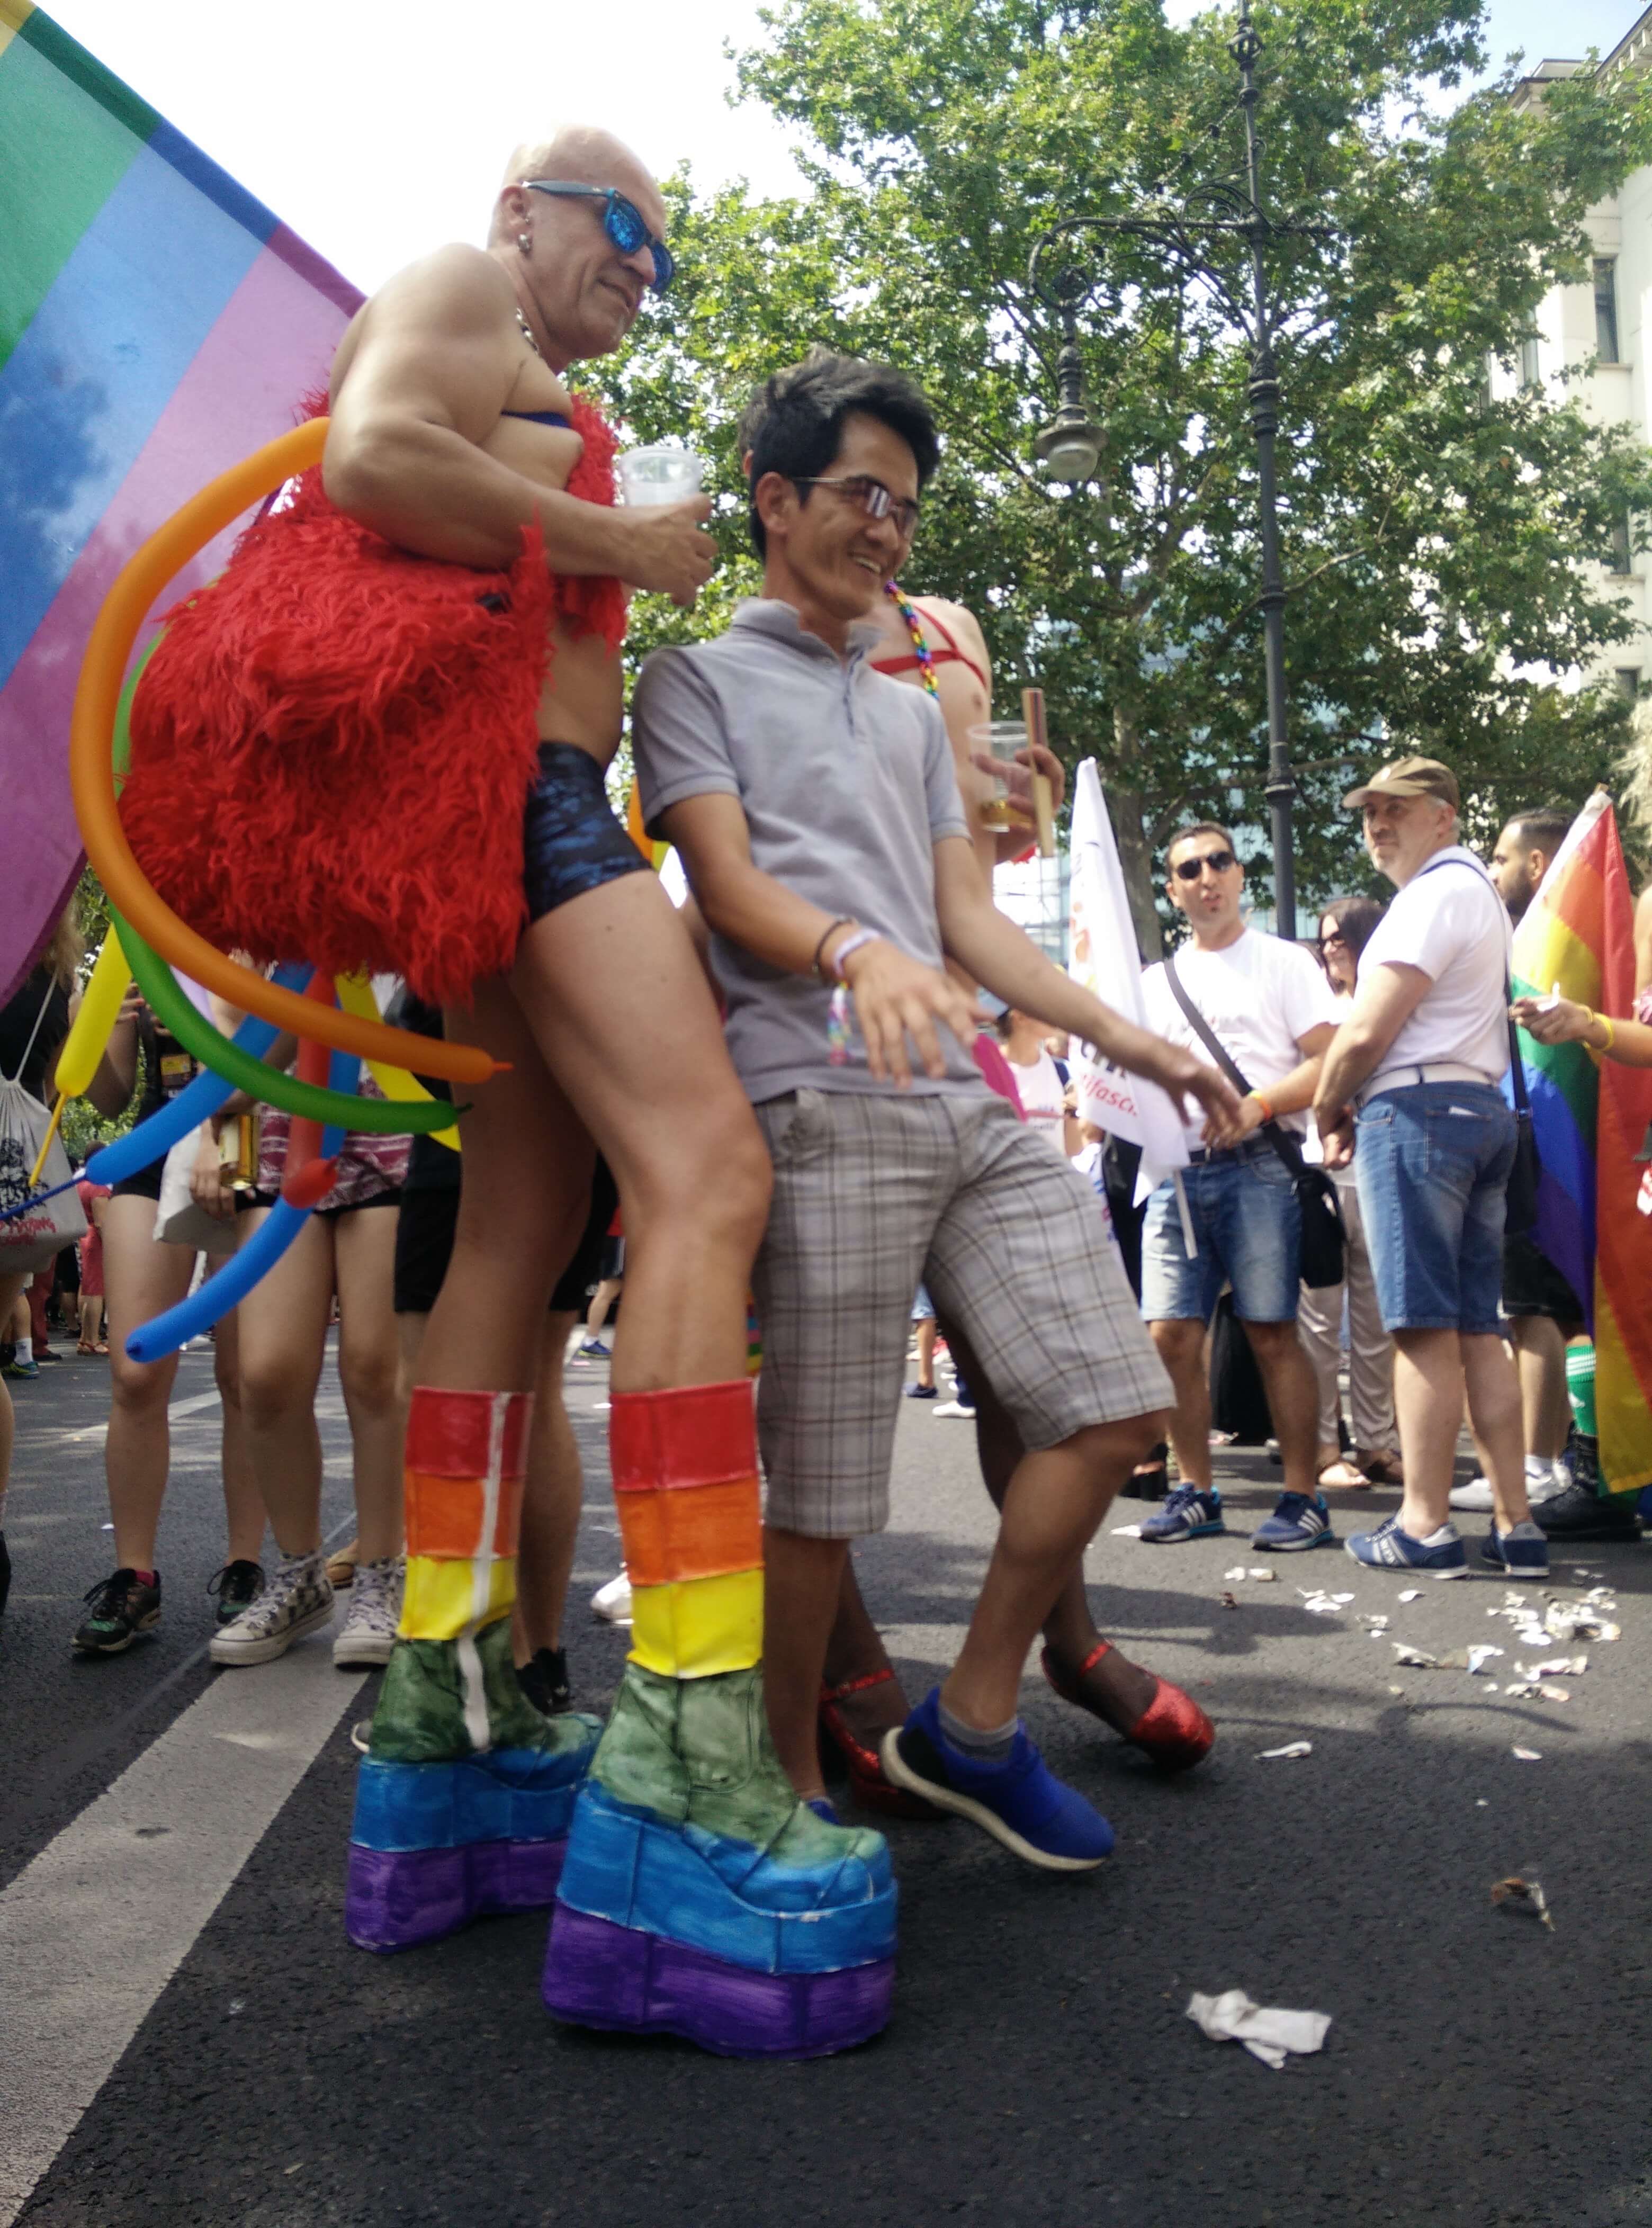 Un bagno mistico nella libertà: è il Berlin Pride